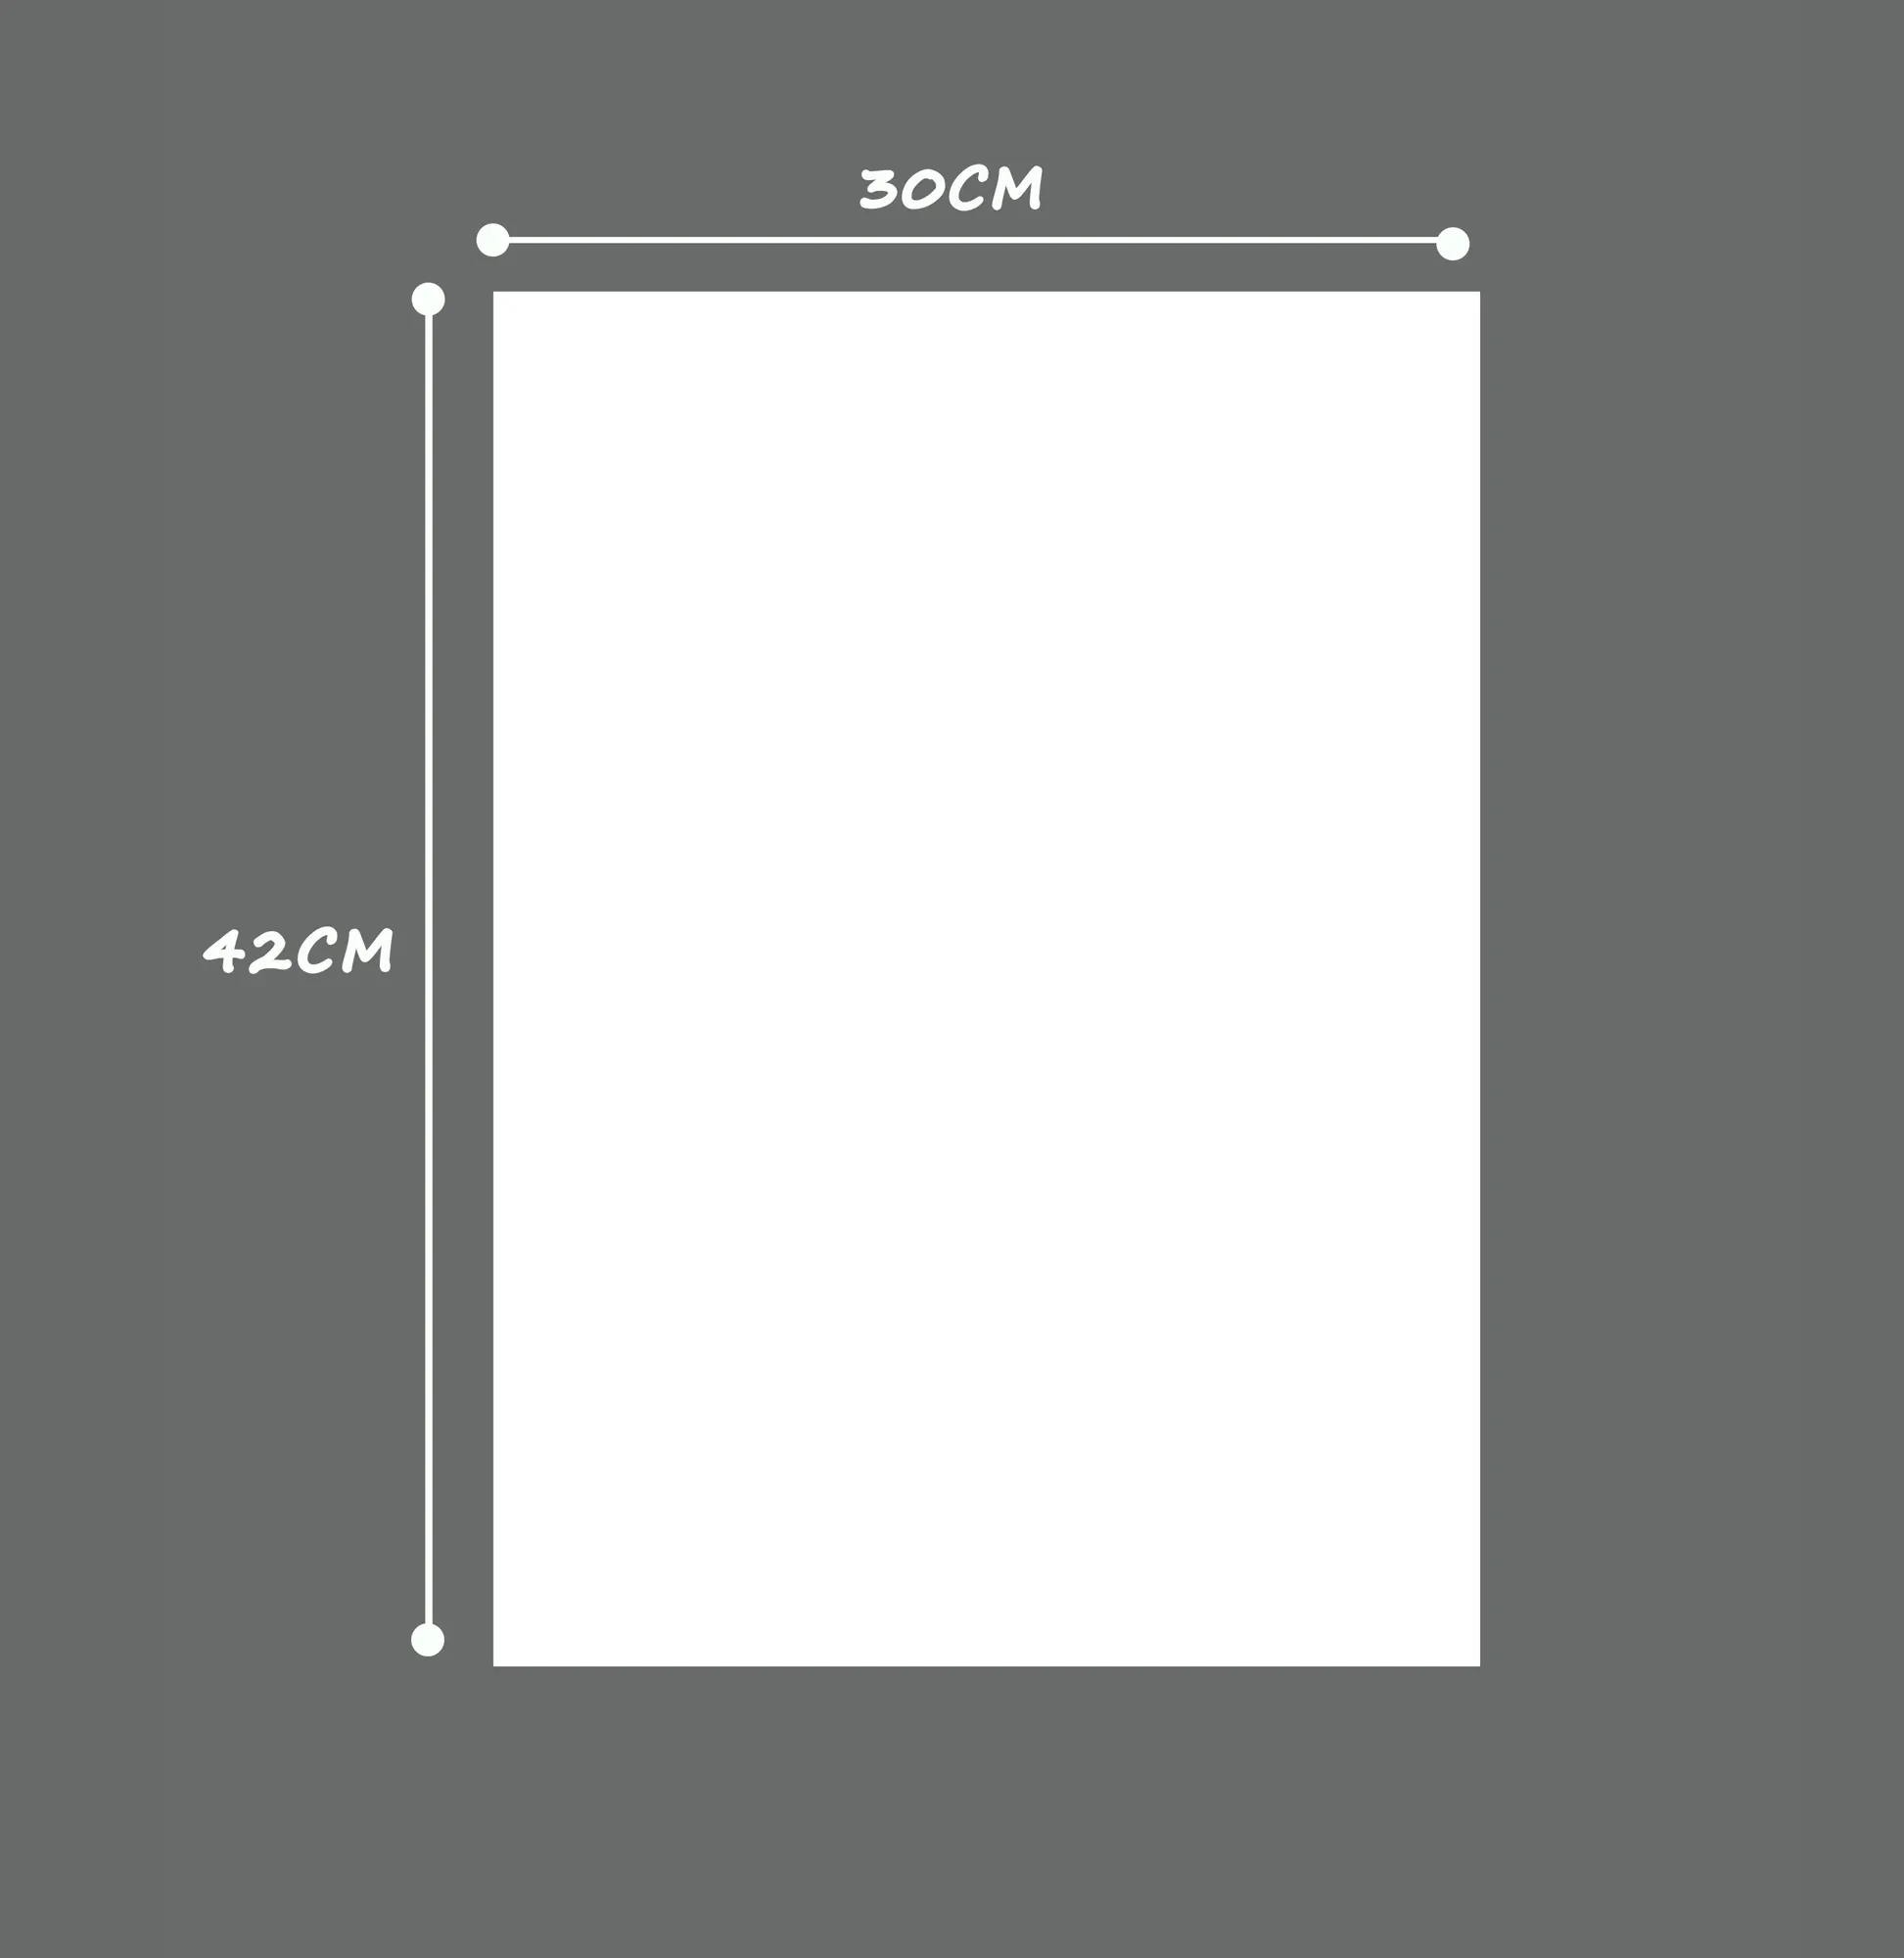 A3 manyetik planlayıcısı kurulu mutfak dolabı büyük kuru silme takvim organizatör not defteri haftalık planlayıcısı beyaz tahta kağıt tüp DA00472